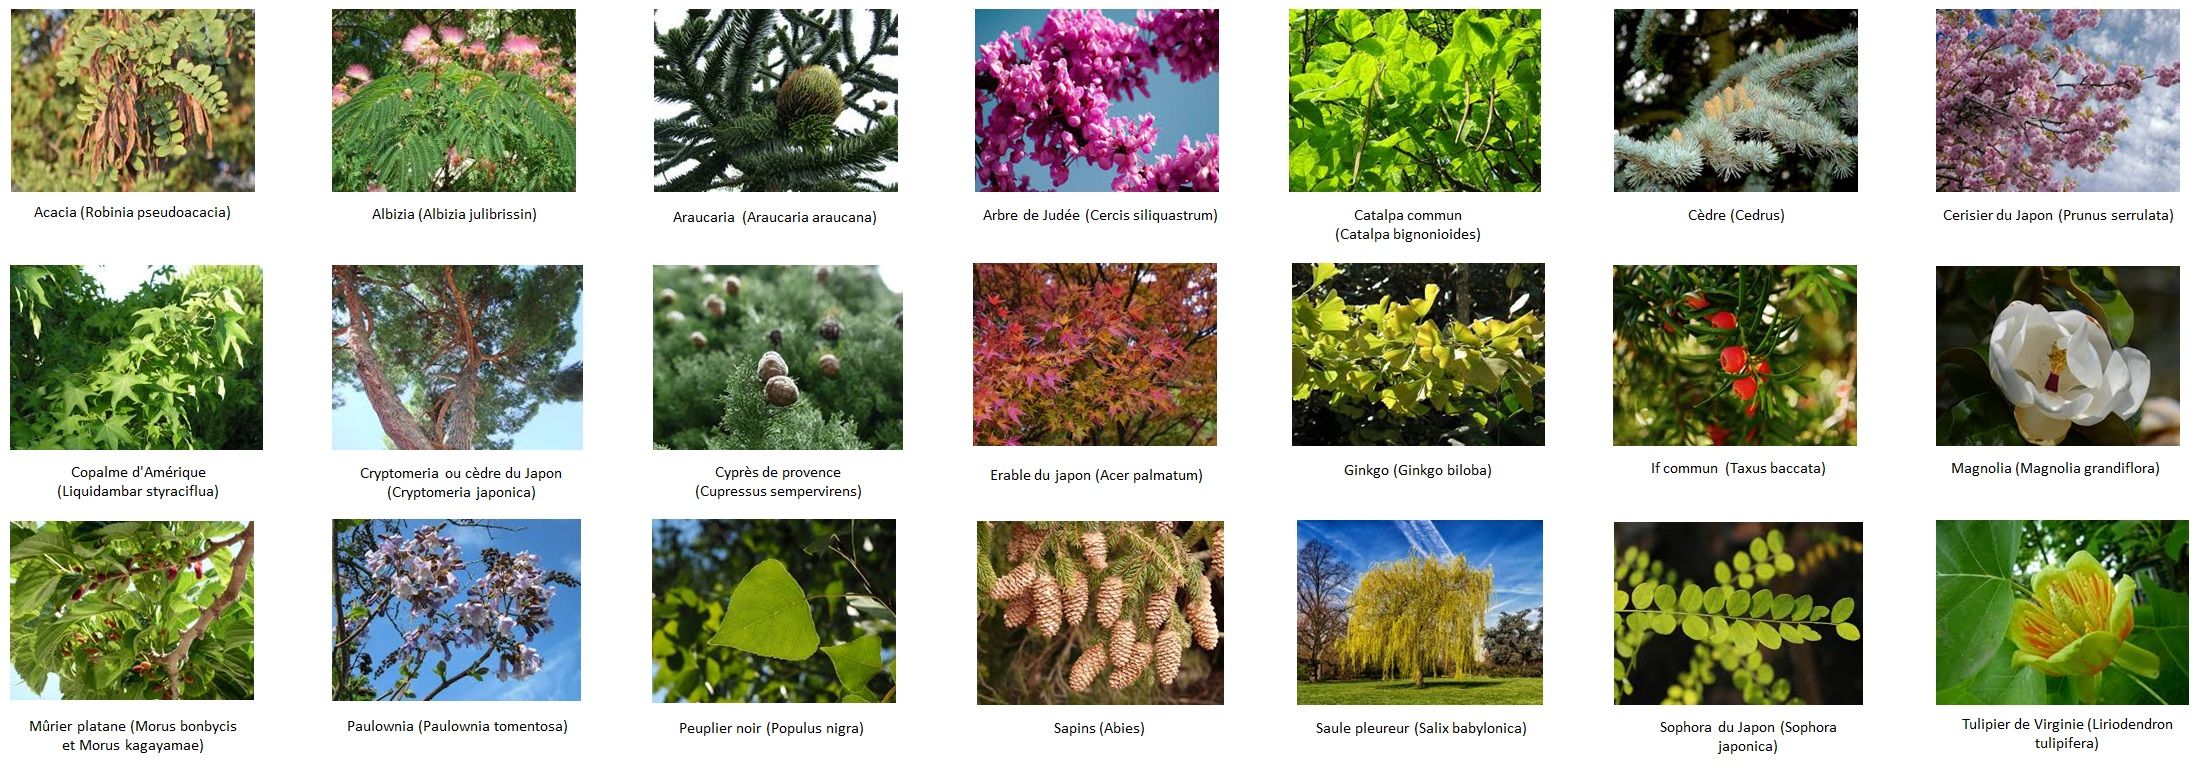 Plantes et fleurs du jardin d'ornement : description, variétés et soins -  Page 4